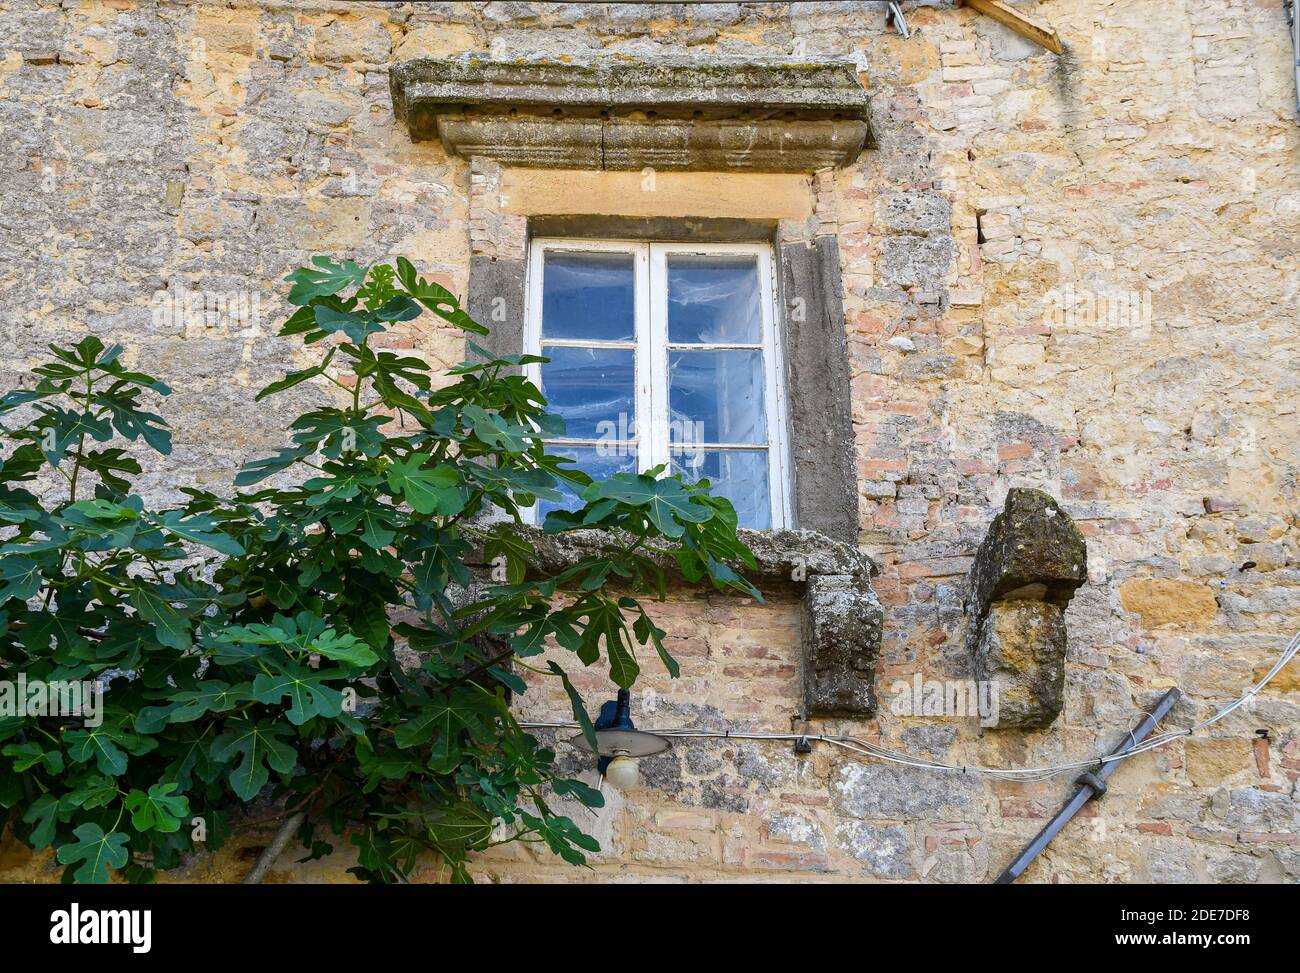 Dettagli della façade facciata di una vecchia casa abbandonata con una finestra su un muro di pietra e mattoni e rami di fico, Volterra, Pisa, Toscana, Italia Foto Stock